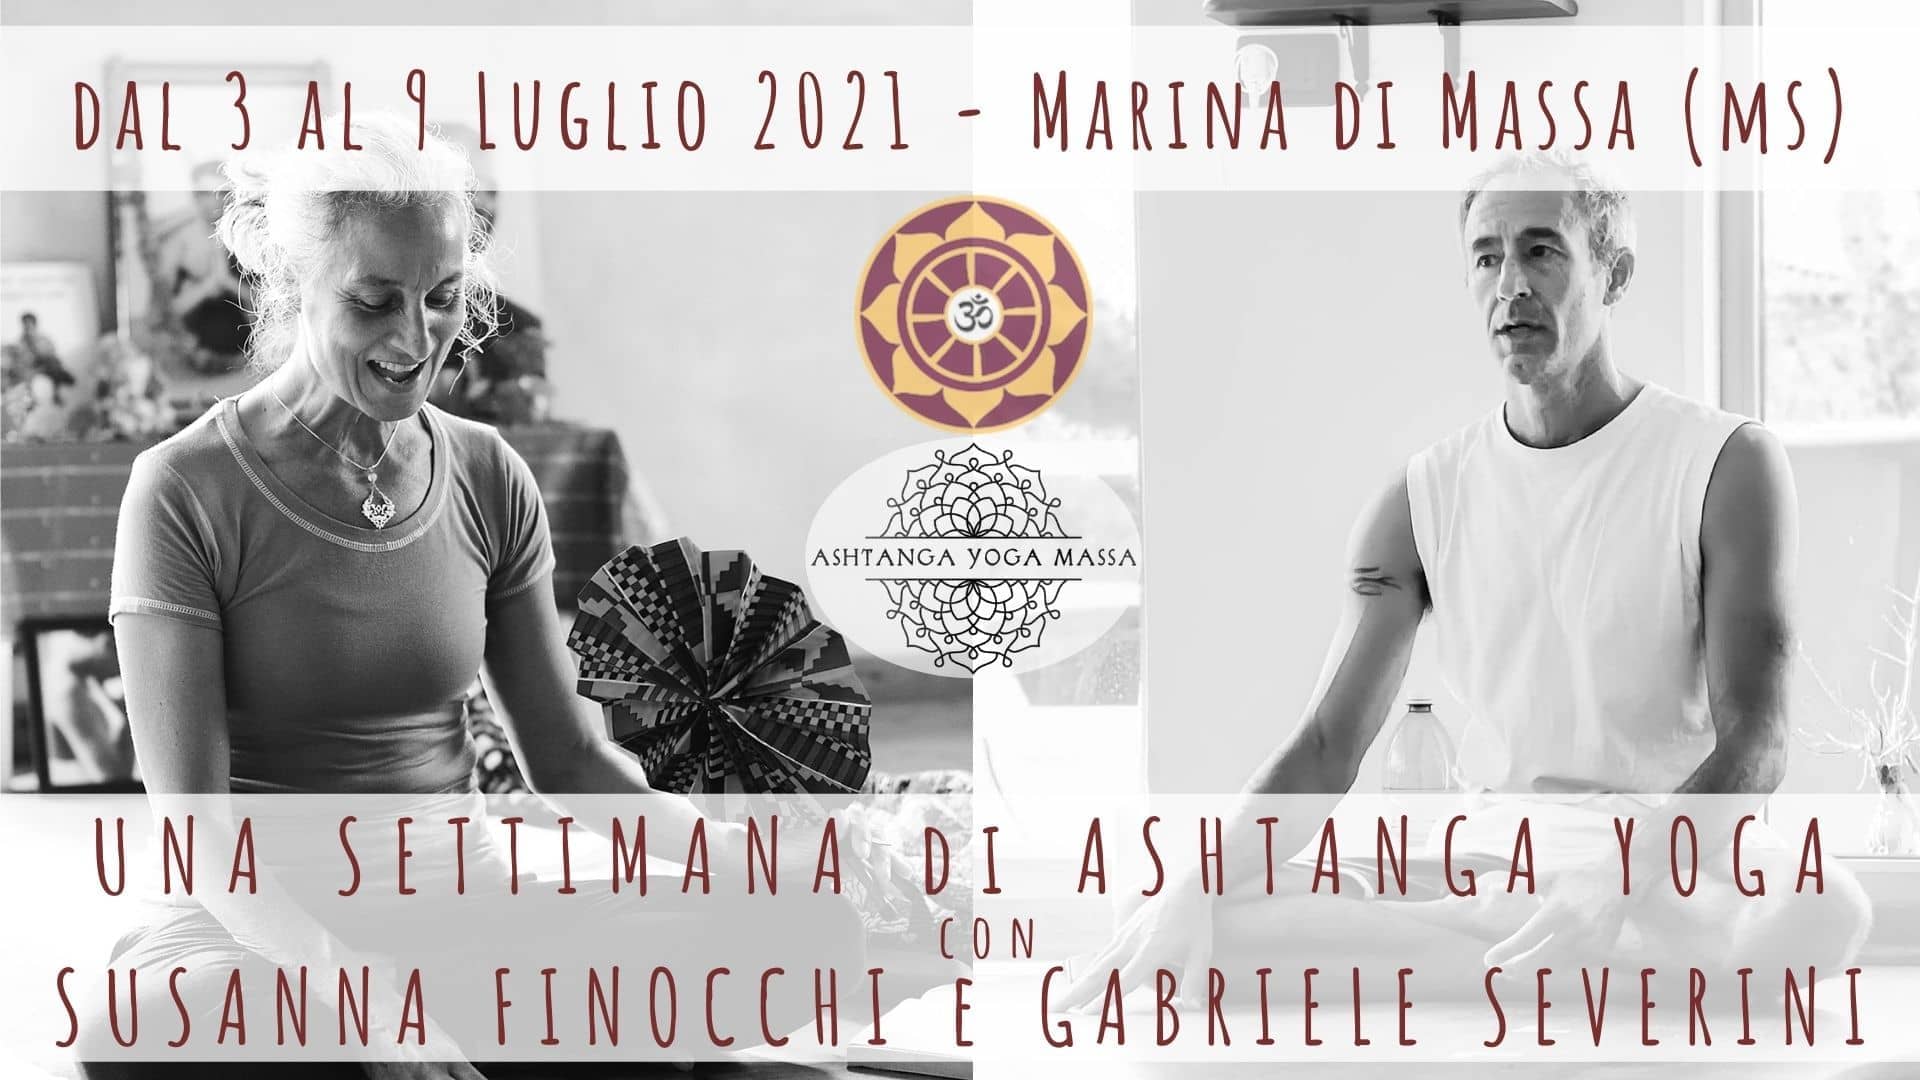 Foto 1 - Una settimana di Ashtanga Yoga con Susanna Finocchi e Gabriele Severini, seminario dal 3 al 9 Luglio 2021 a Marina di Massa in Toscana